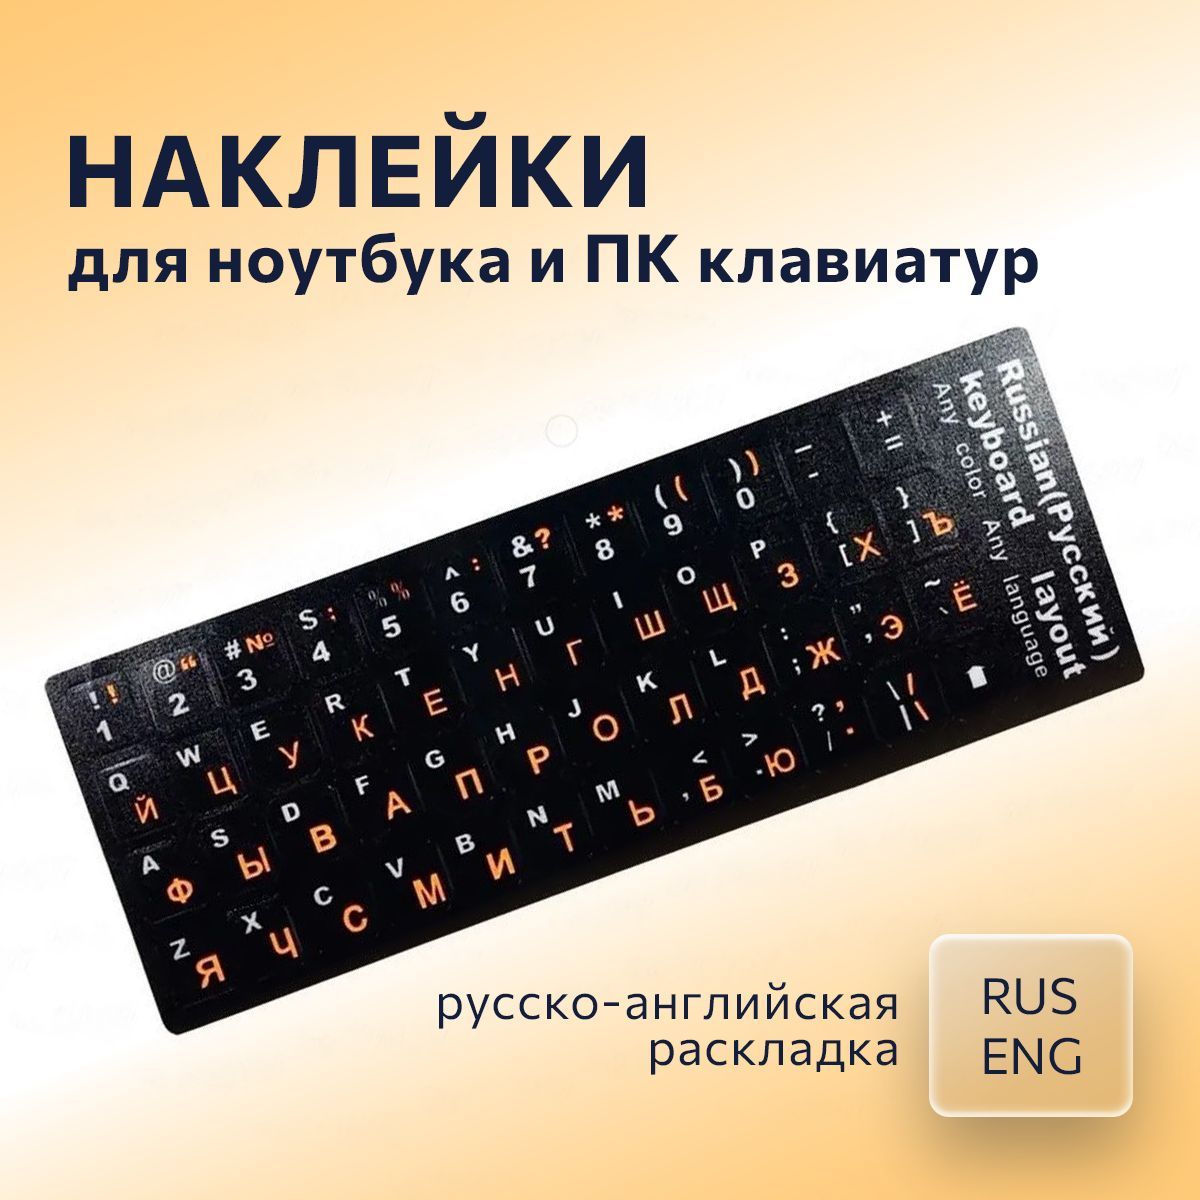 Бесплатный перевод языков английский - болгарский в онлайн-словаре PONS